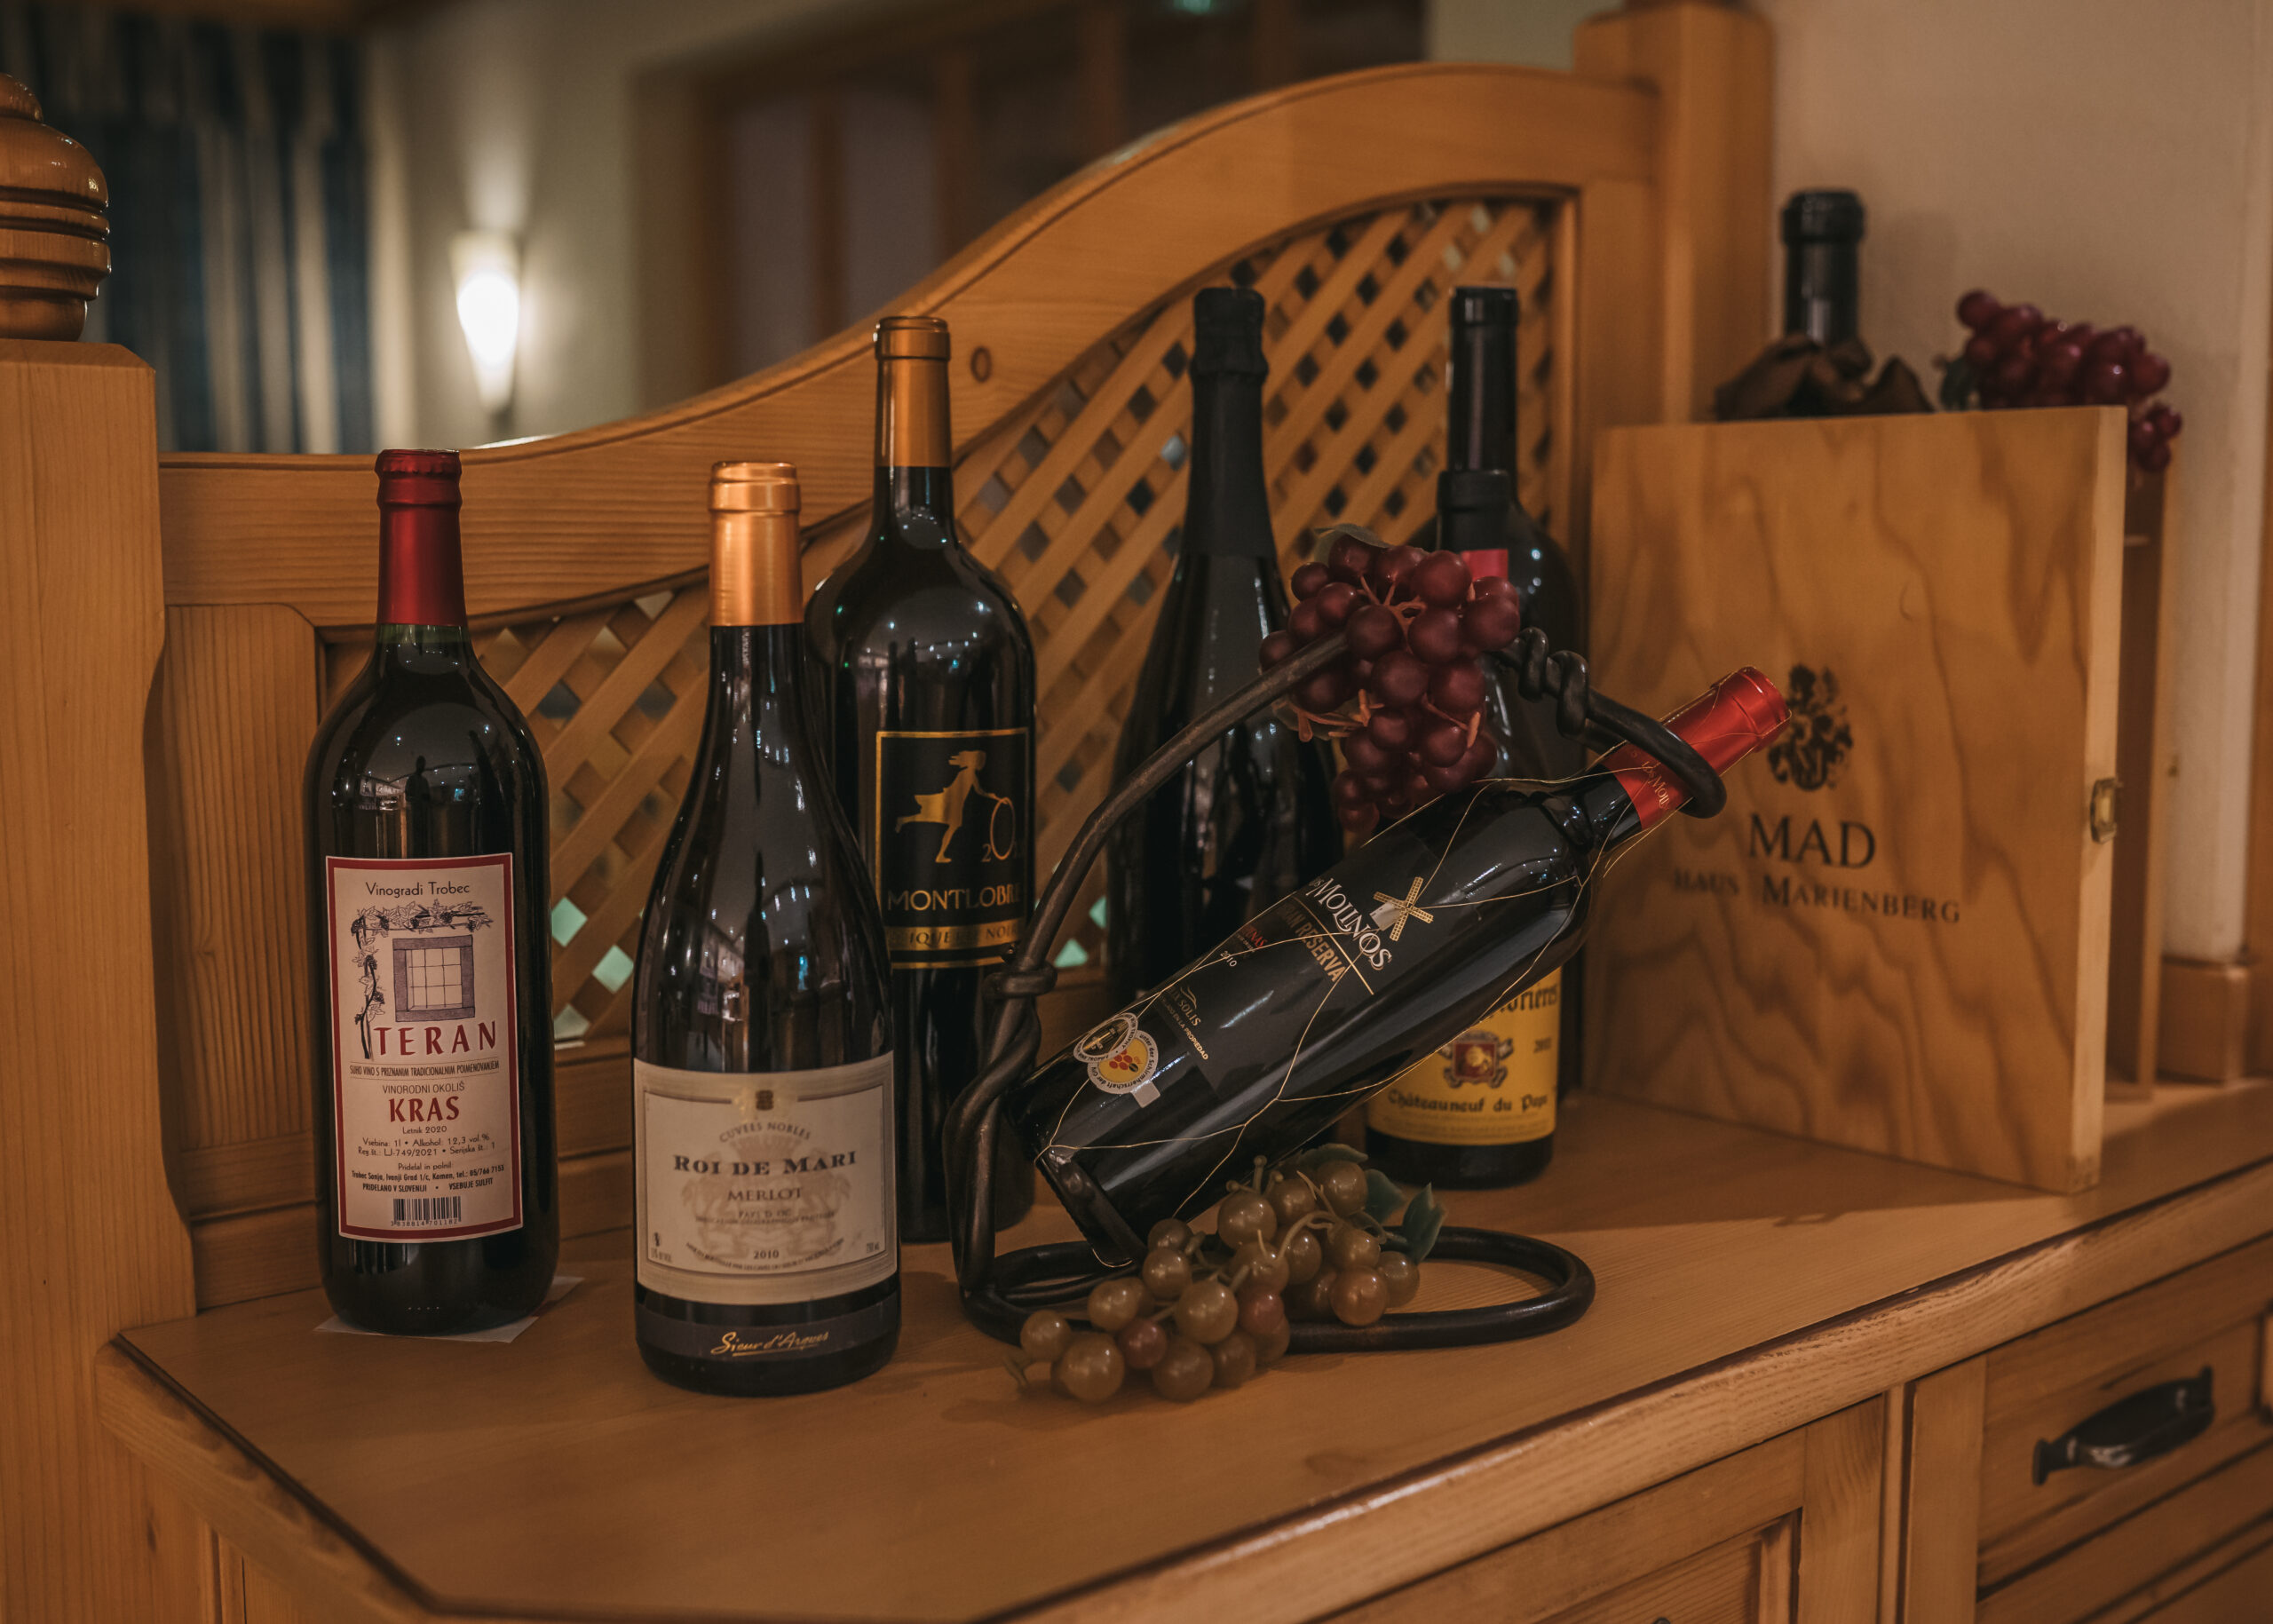 Eine sorgfältig ausgewählte Weinsammlung, darunter Flaschen von Teran und Roi de Mari Merlot, arrangiert auf einem Holztisch neben Weintrauben